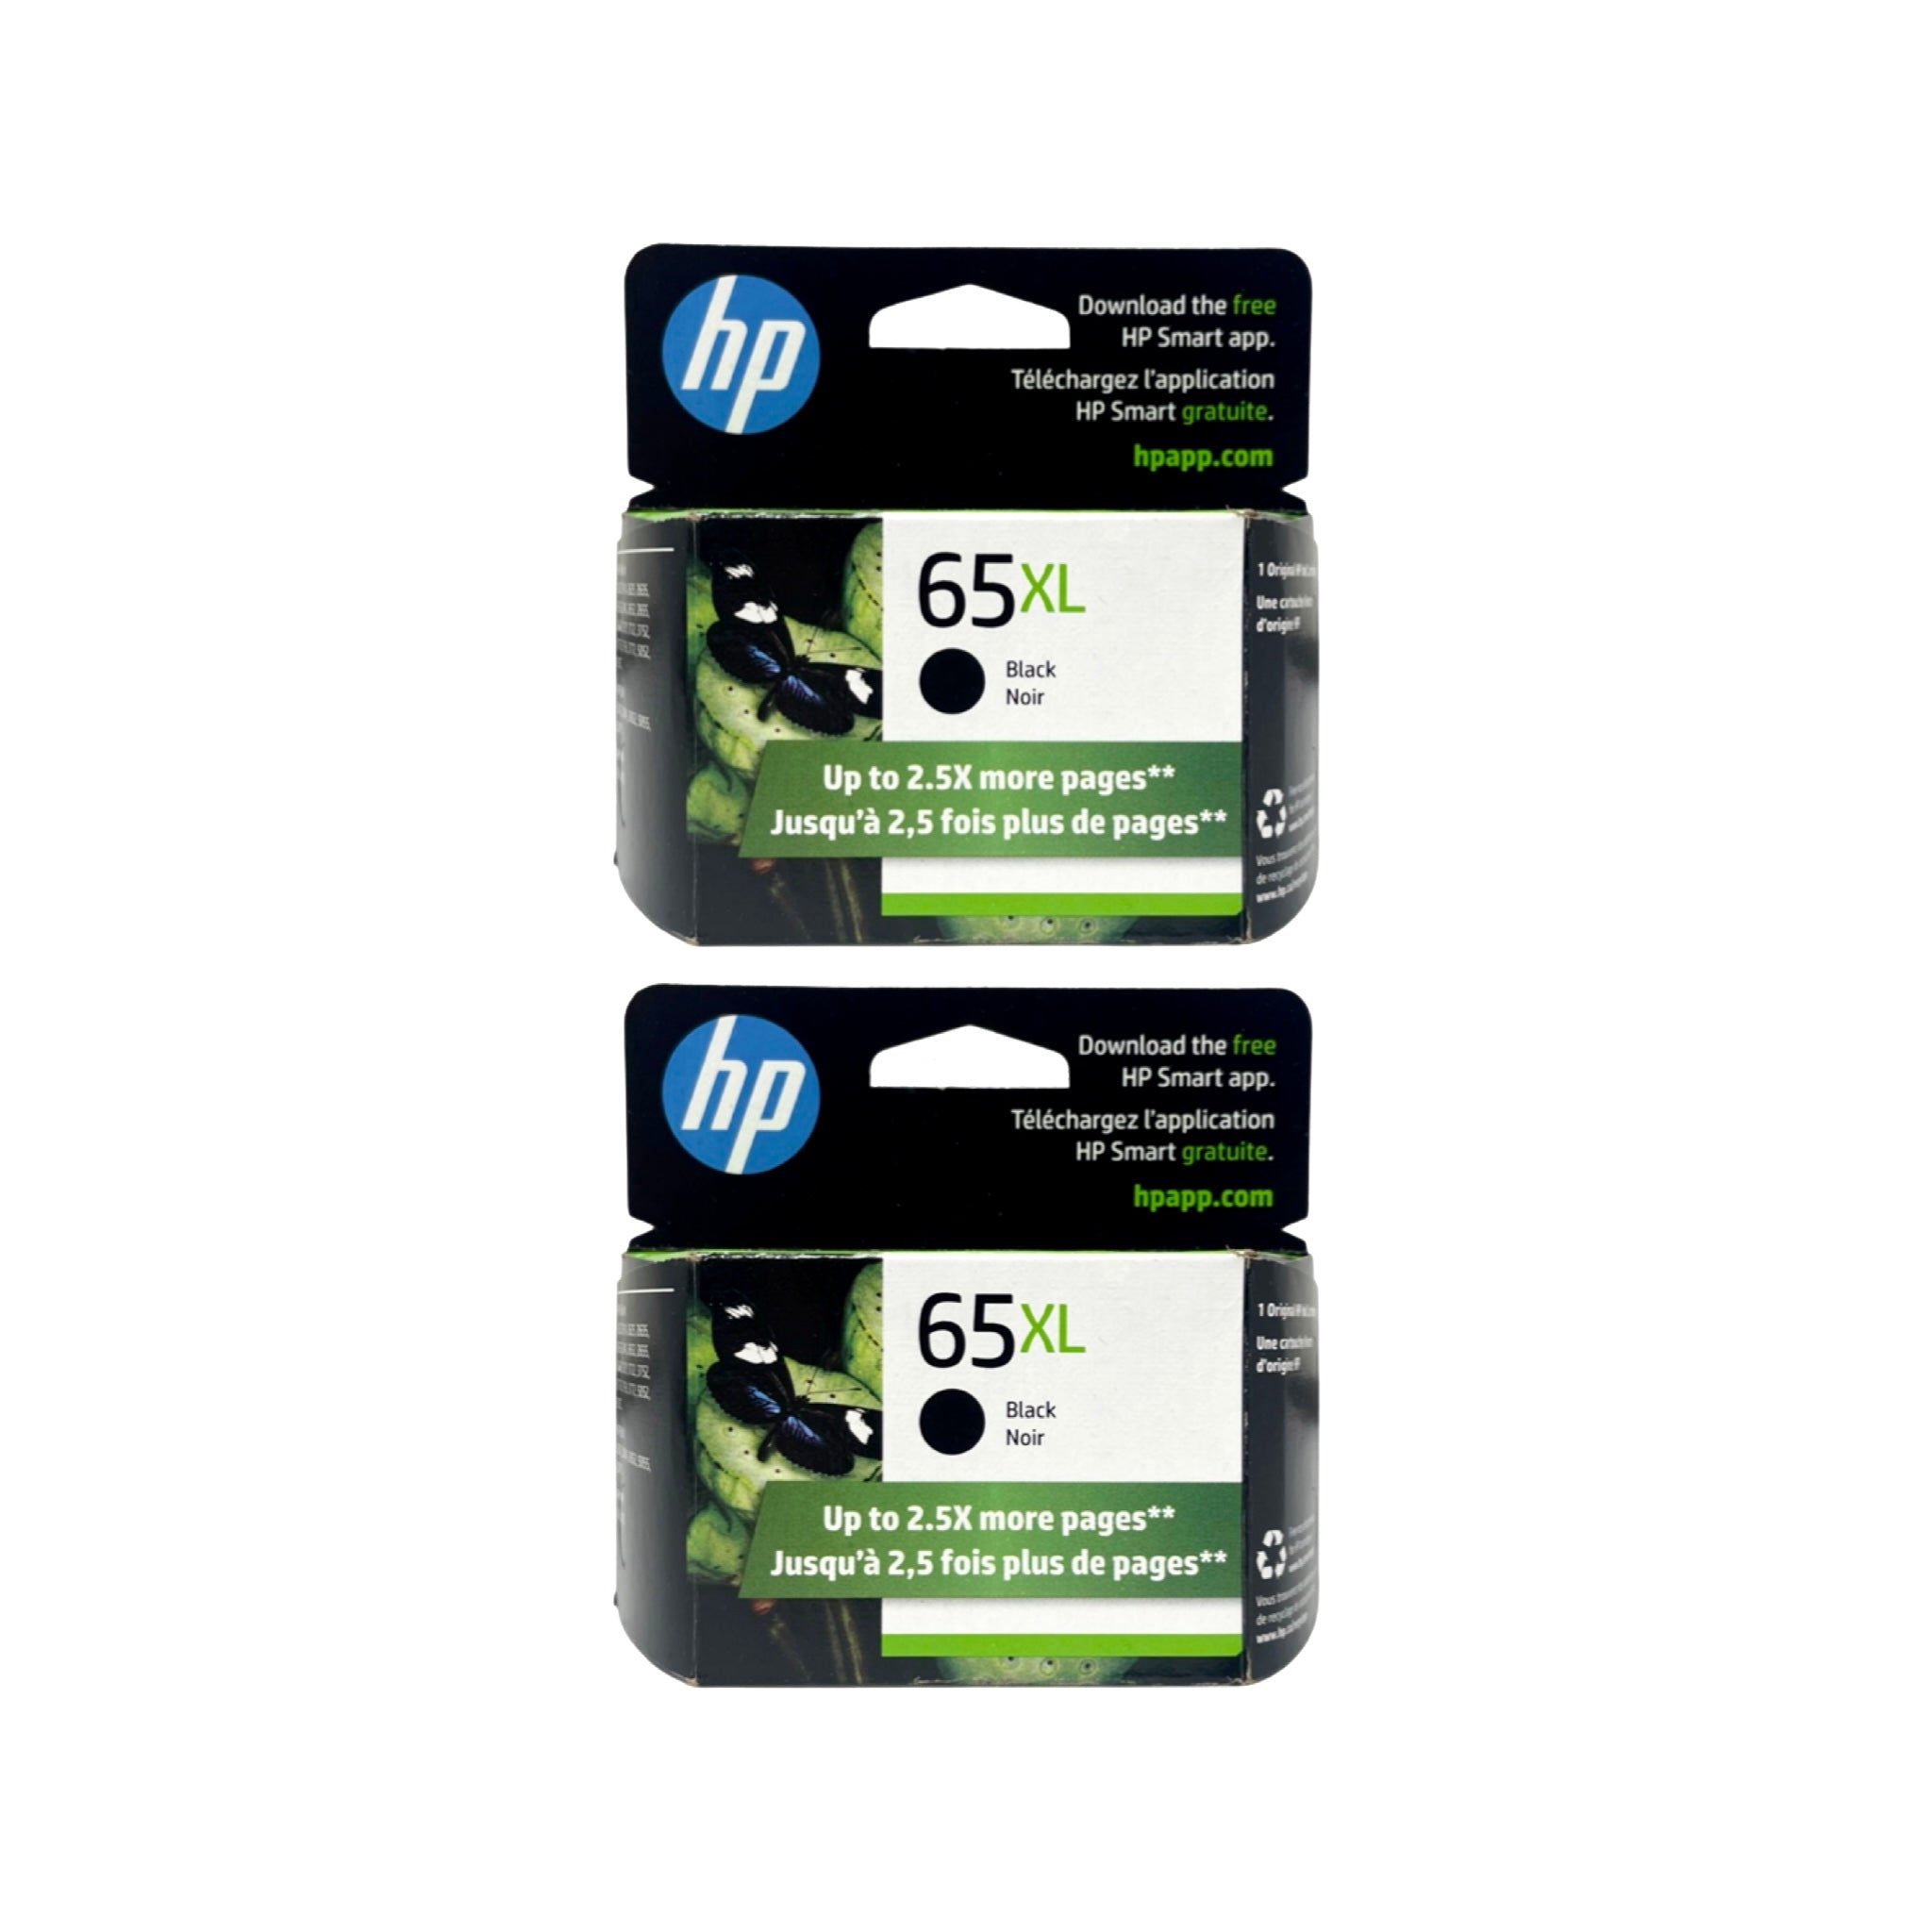 Genuine HP 65XL Black Ink Cartridges, High Yield, 2-Pack